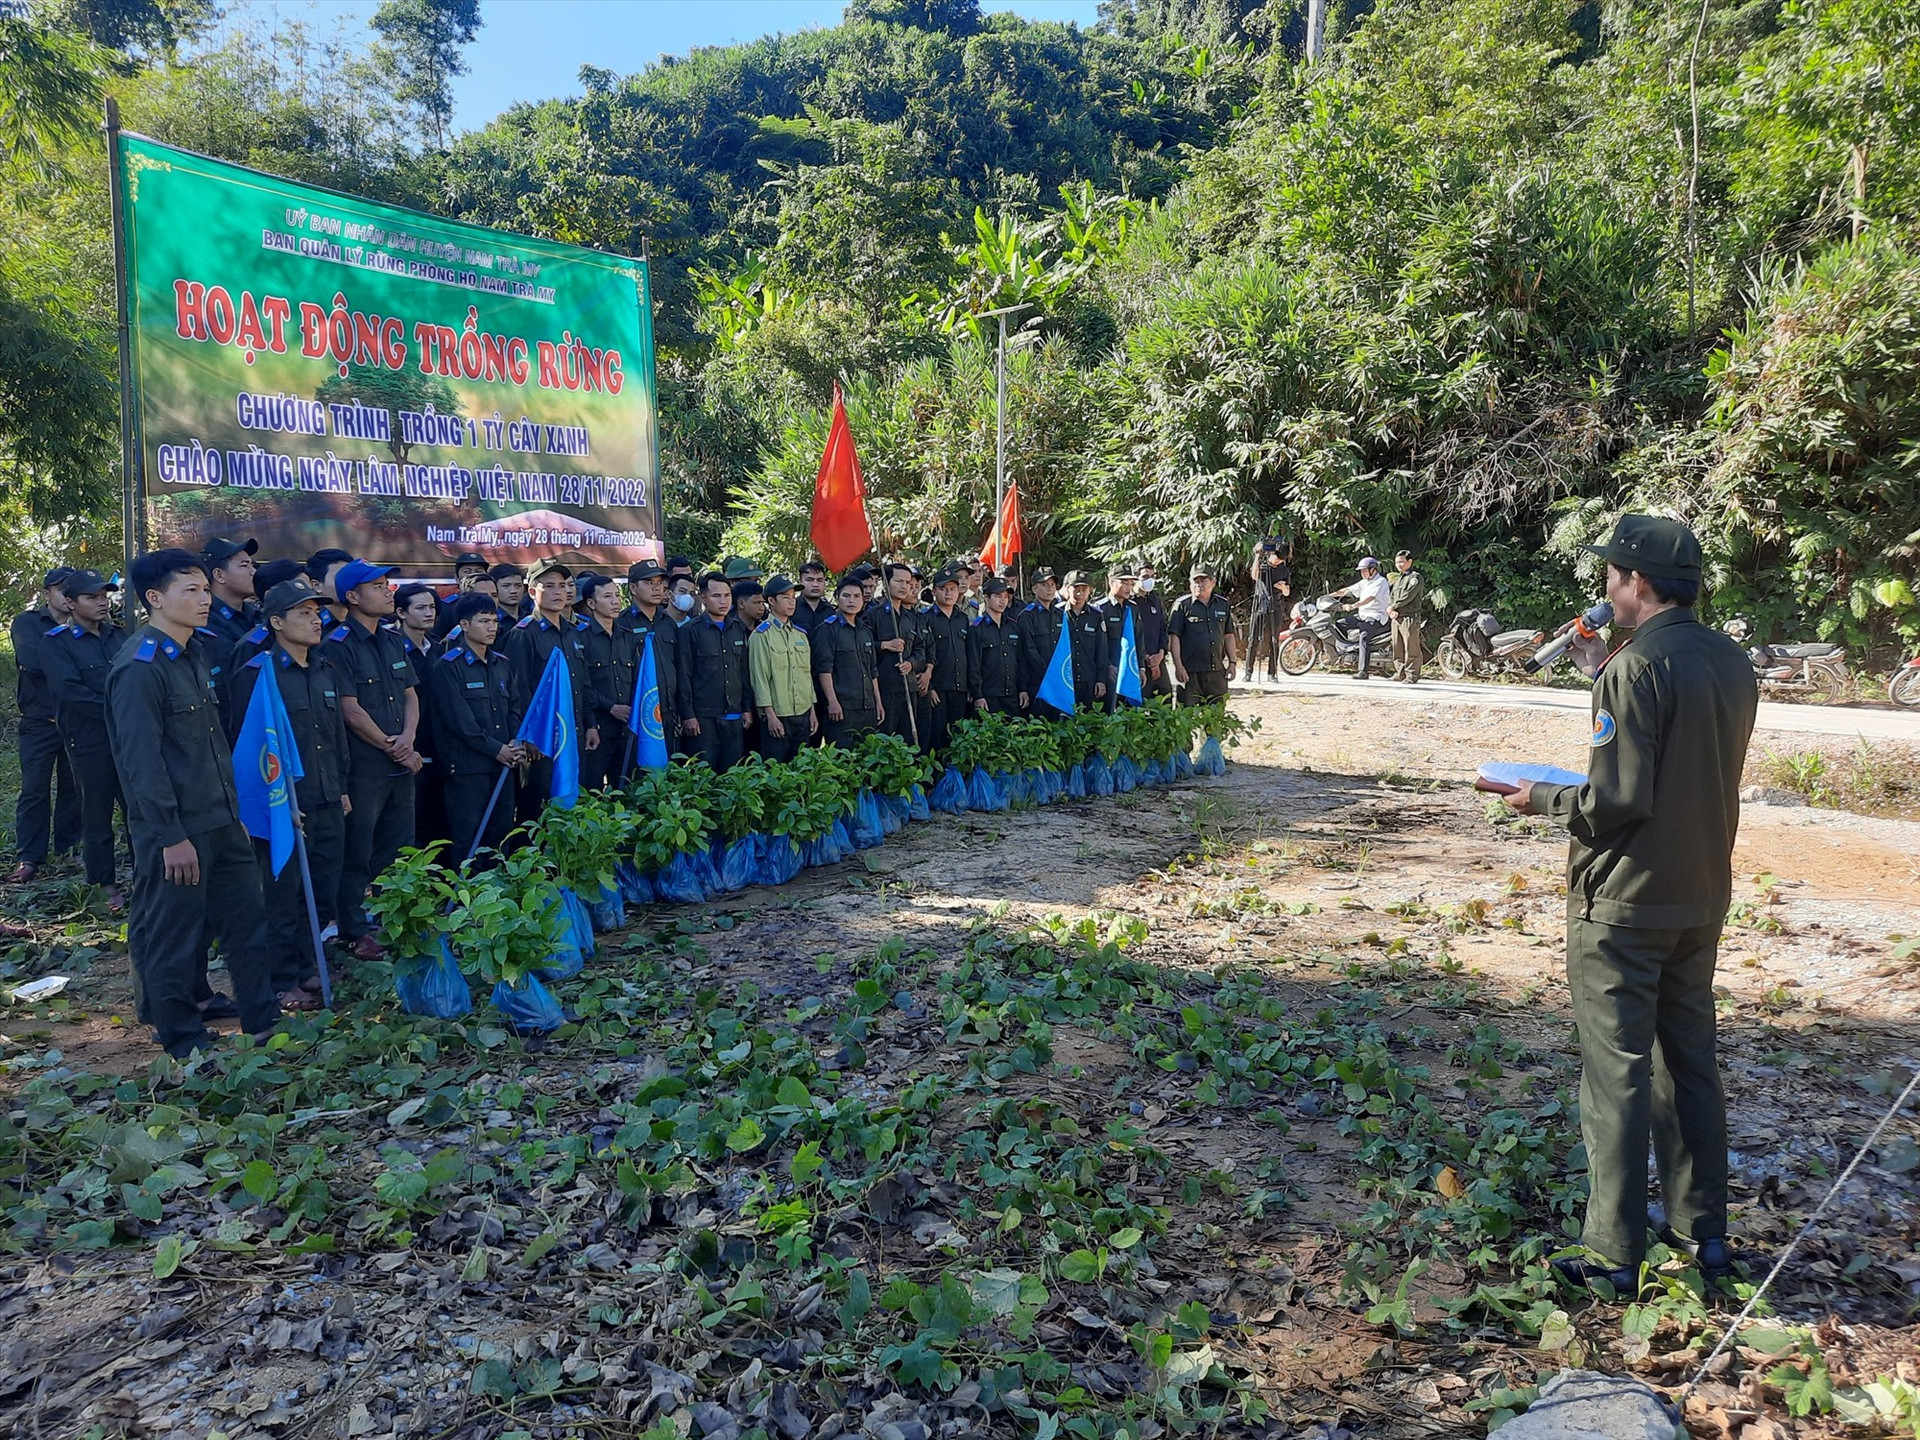 Quang cảnh lễ ra quân trồng rừng chào mừng Ngày Lâm nghiệp Việt Nam. Ảnh: H.Đ